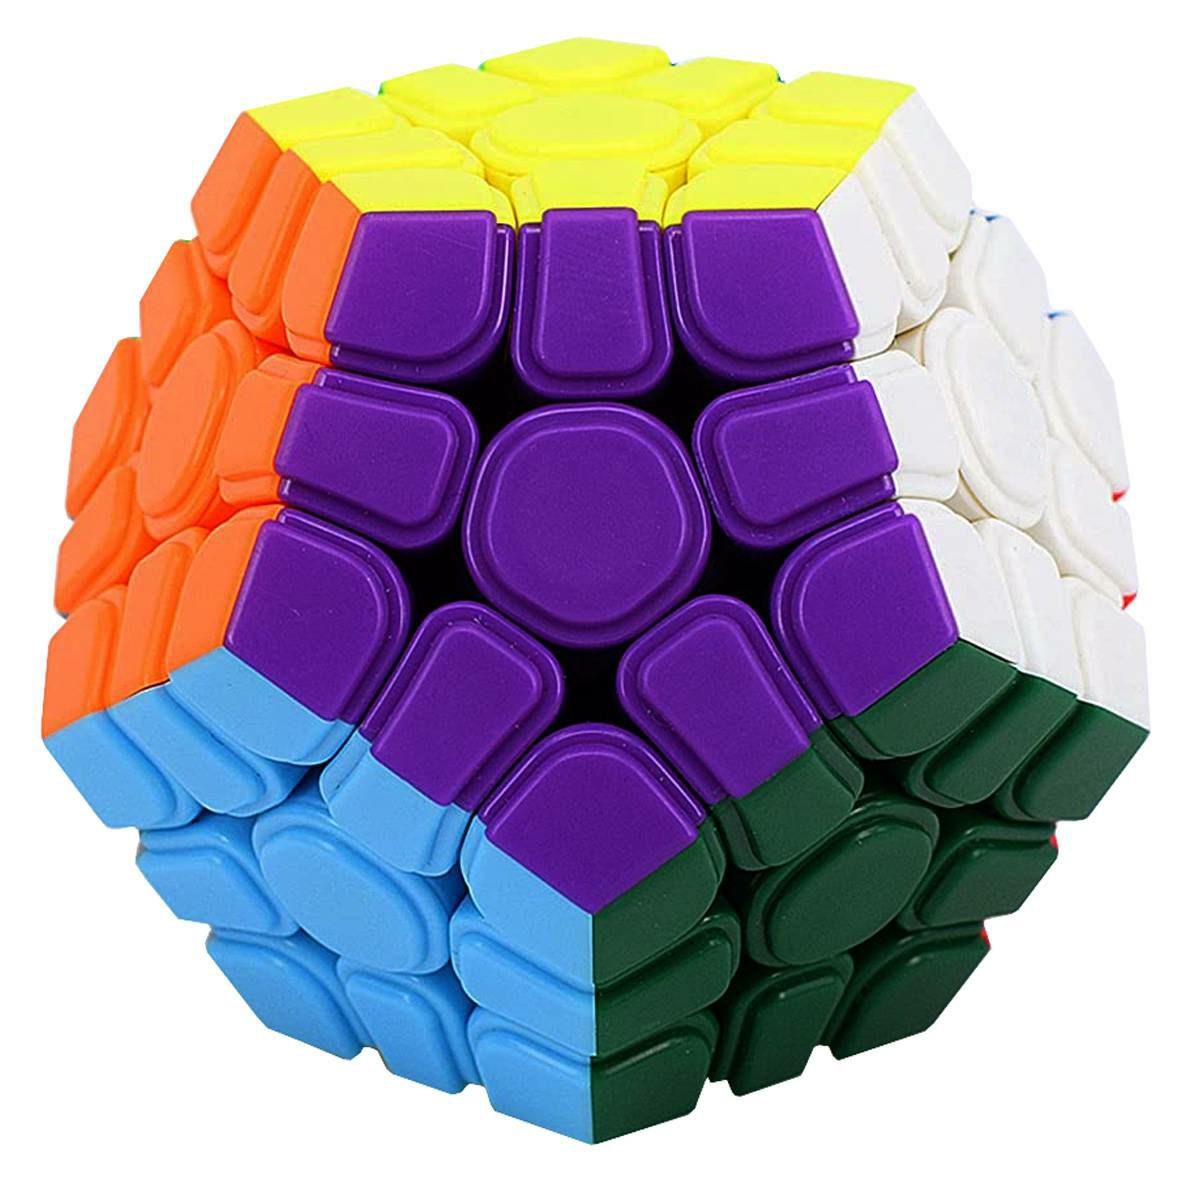 MeiLong Megaminx Cube Magnetic